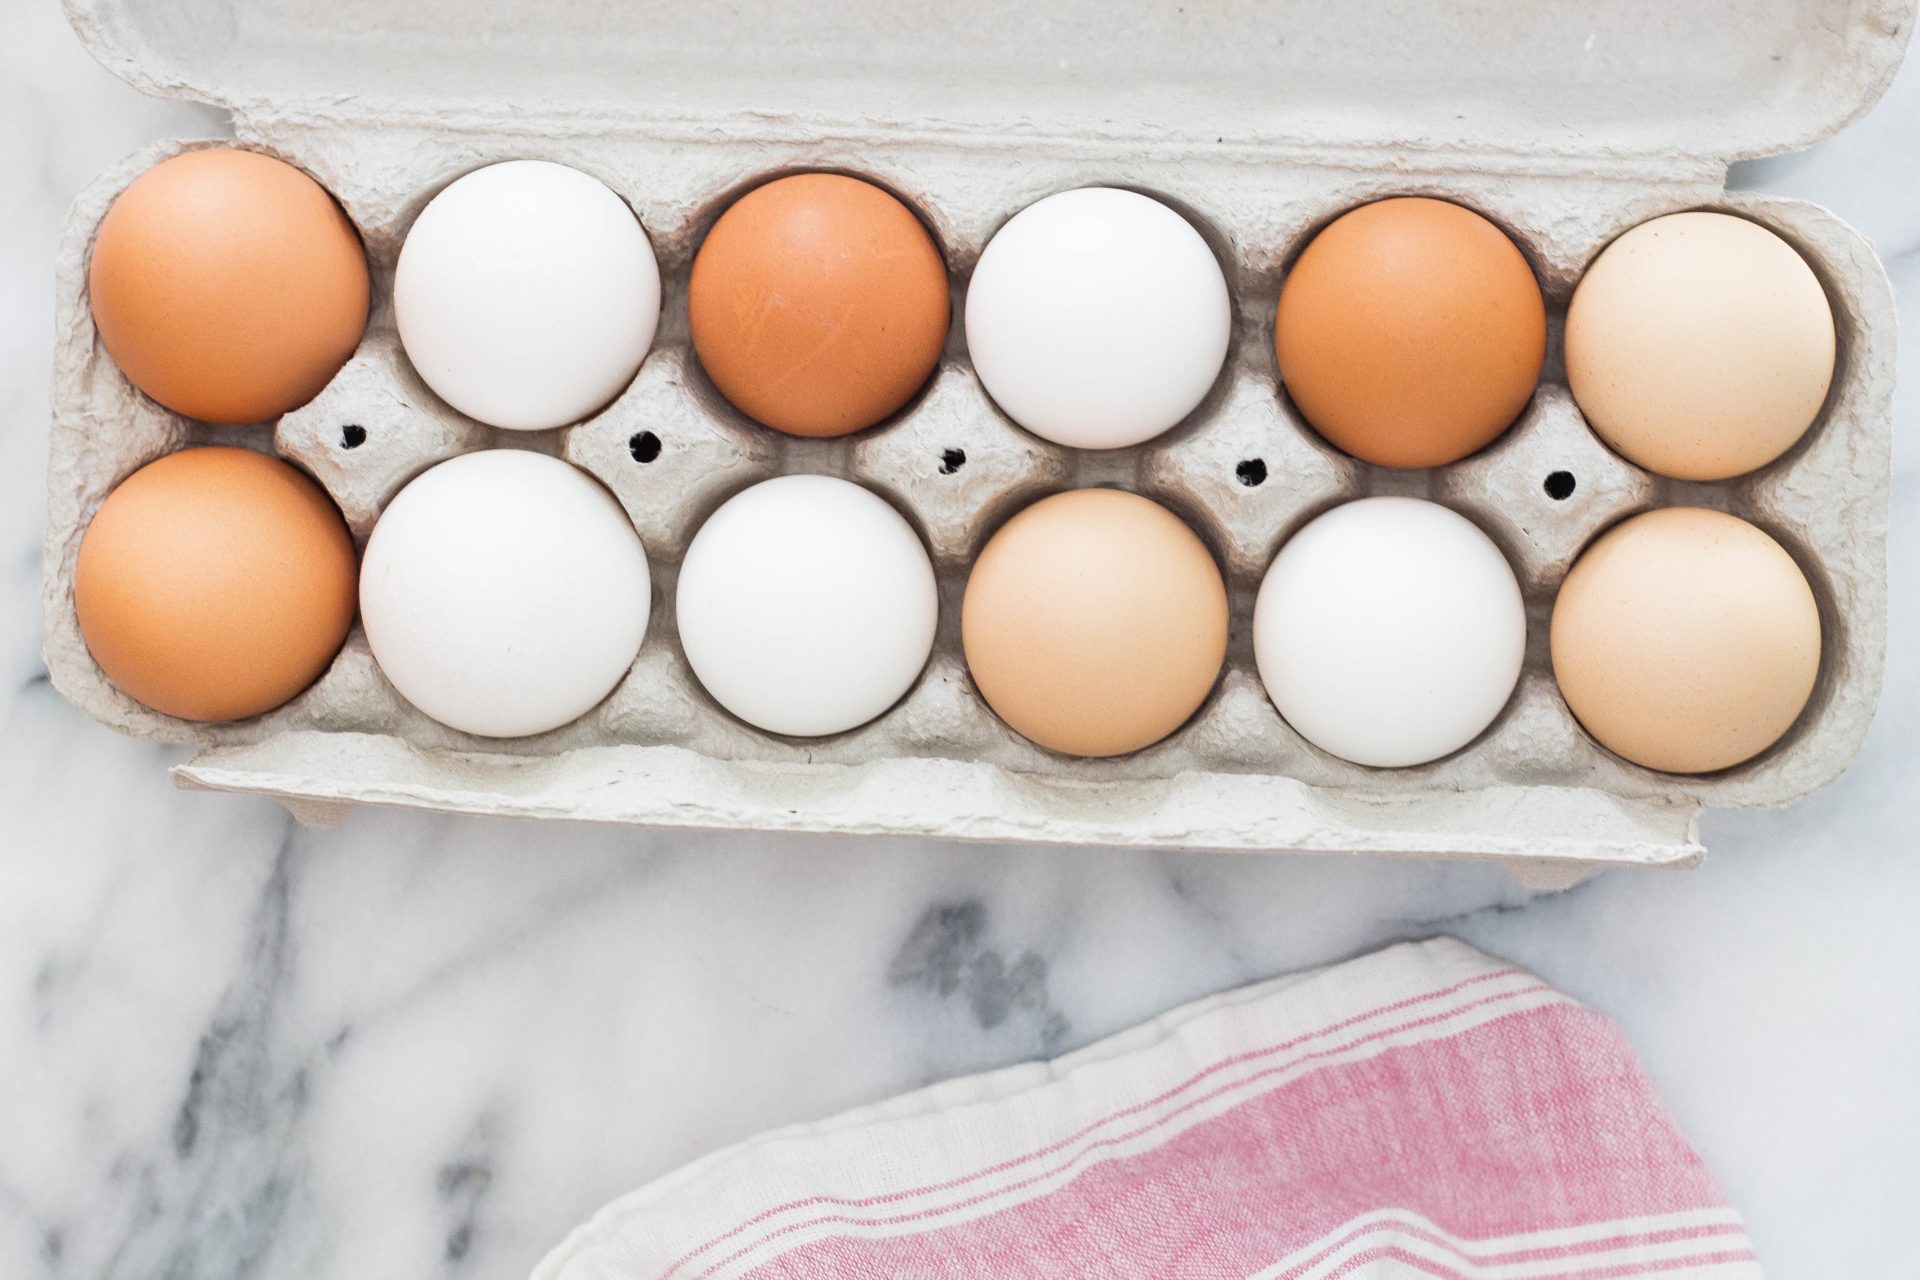 a carton of multi-colored eggs